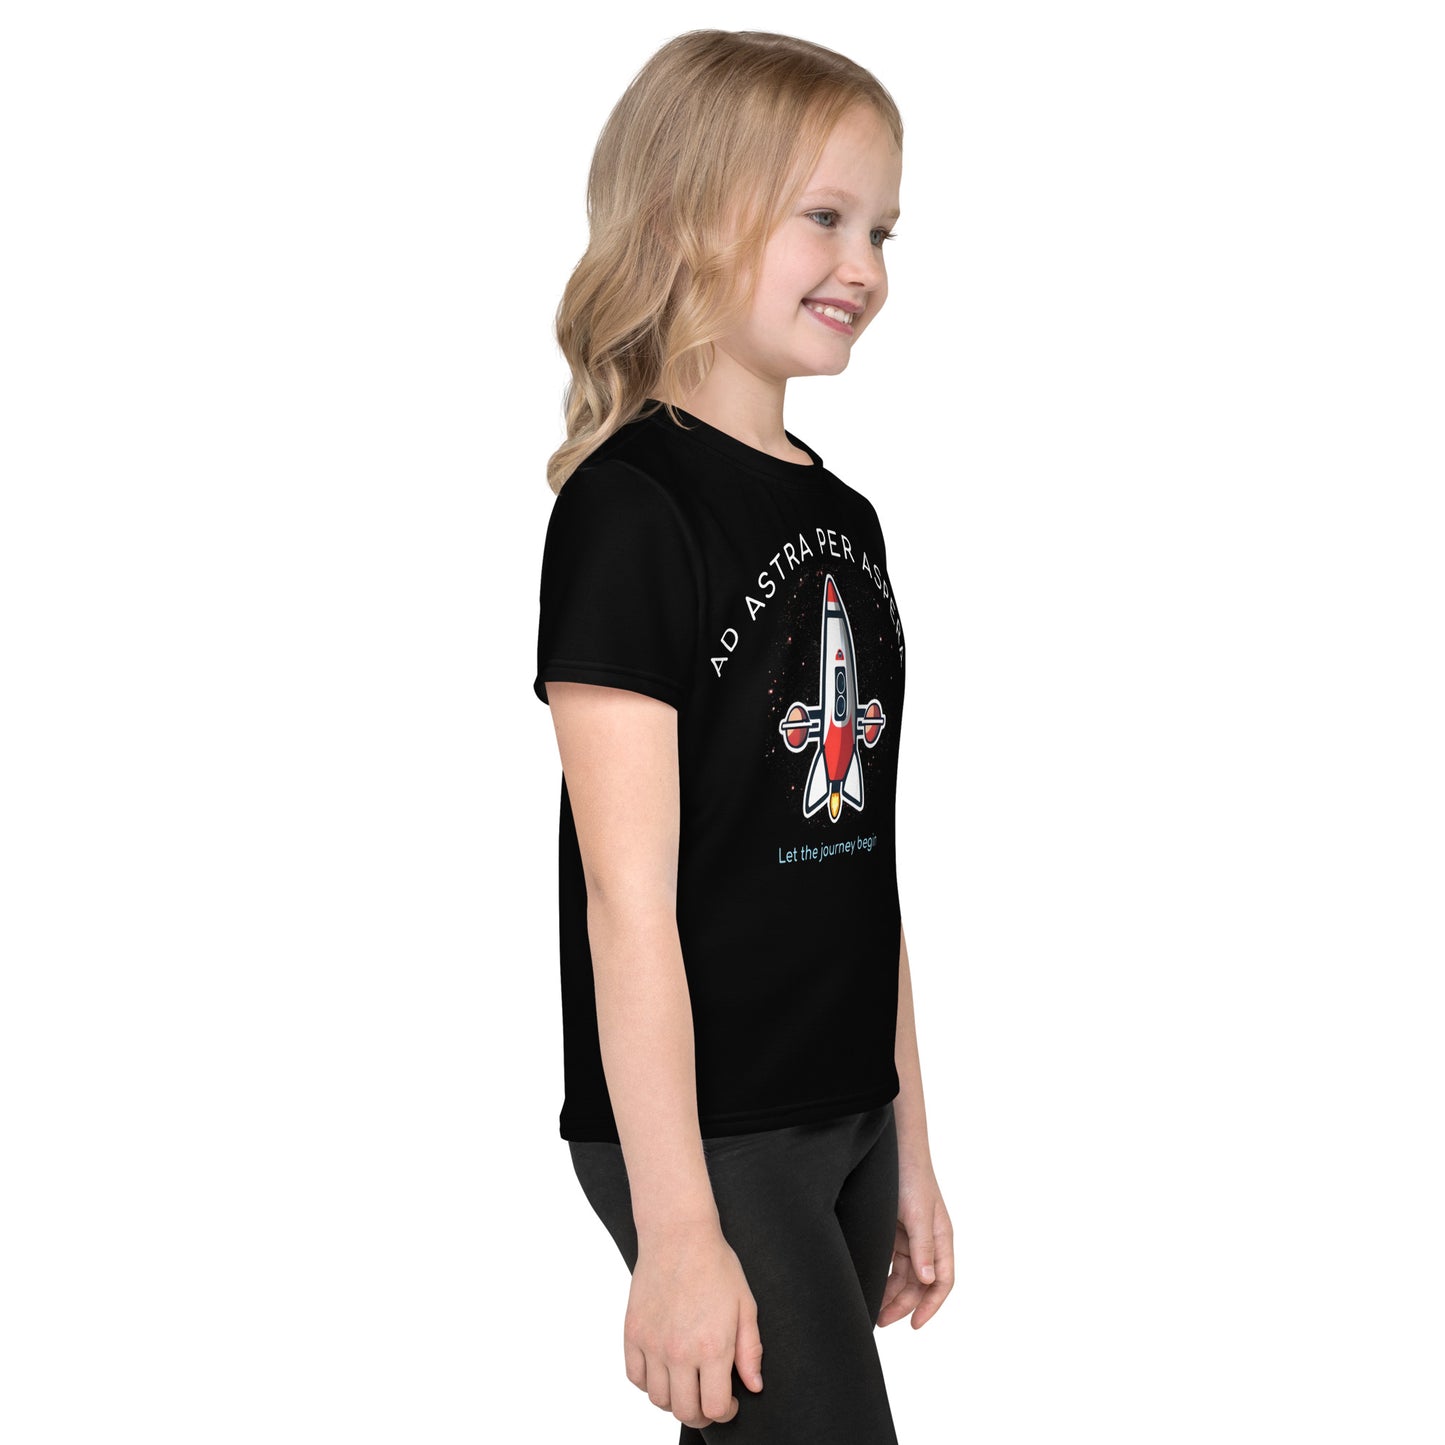 Kids T-shirt Polyester Jersey - USS Titan